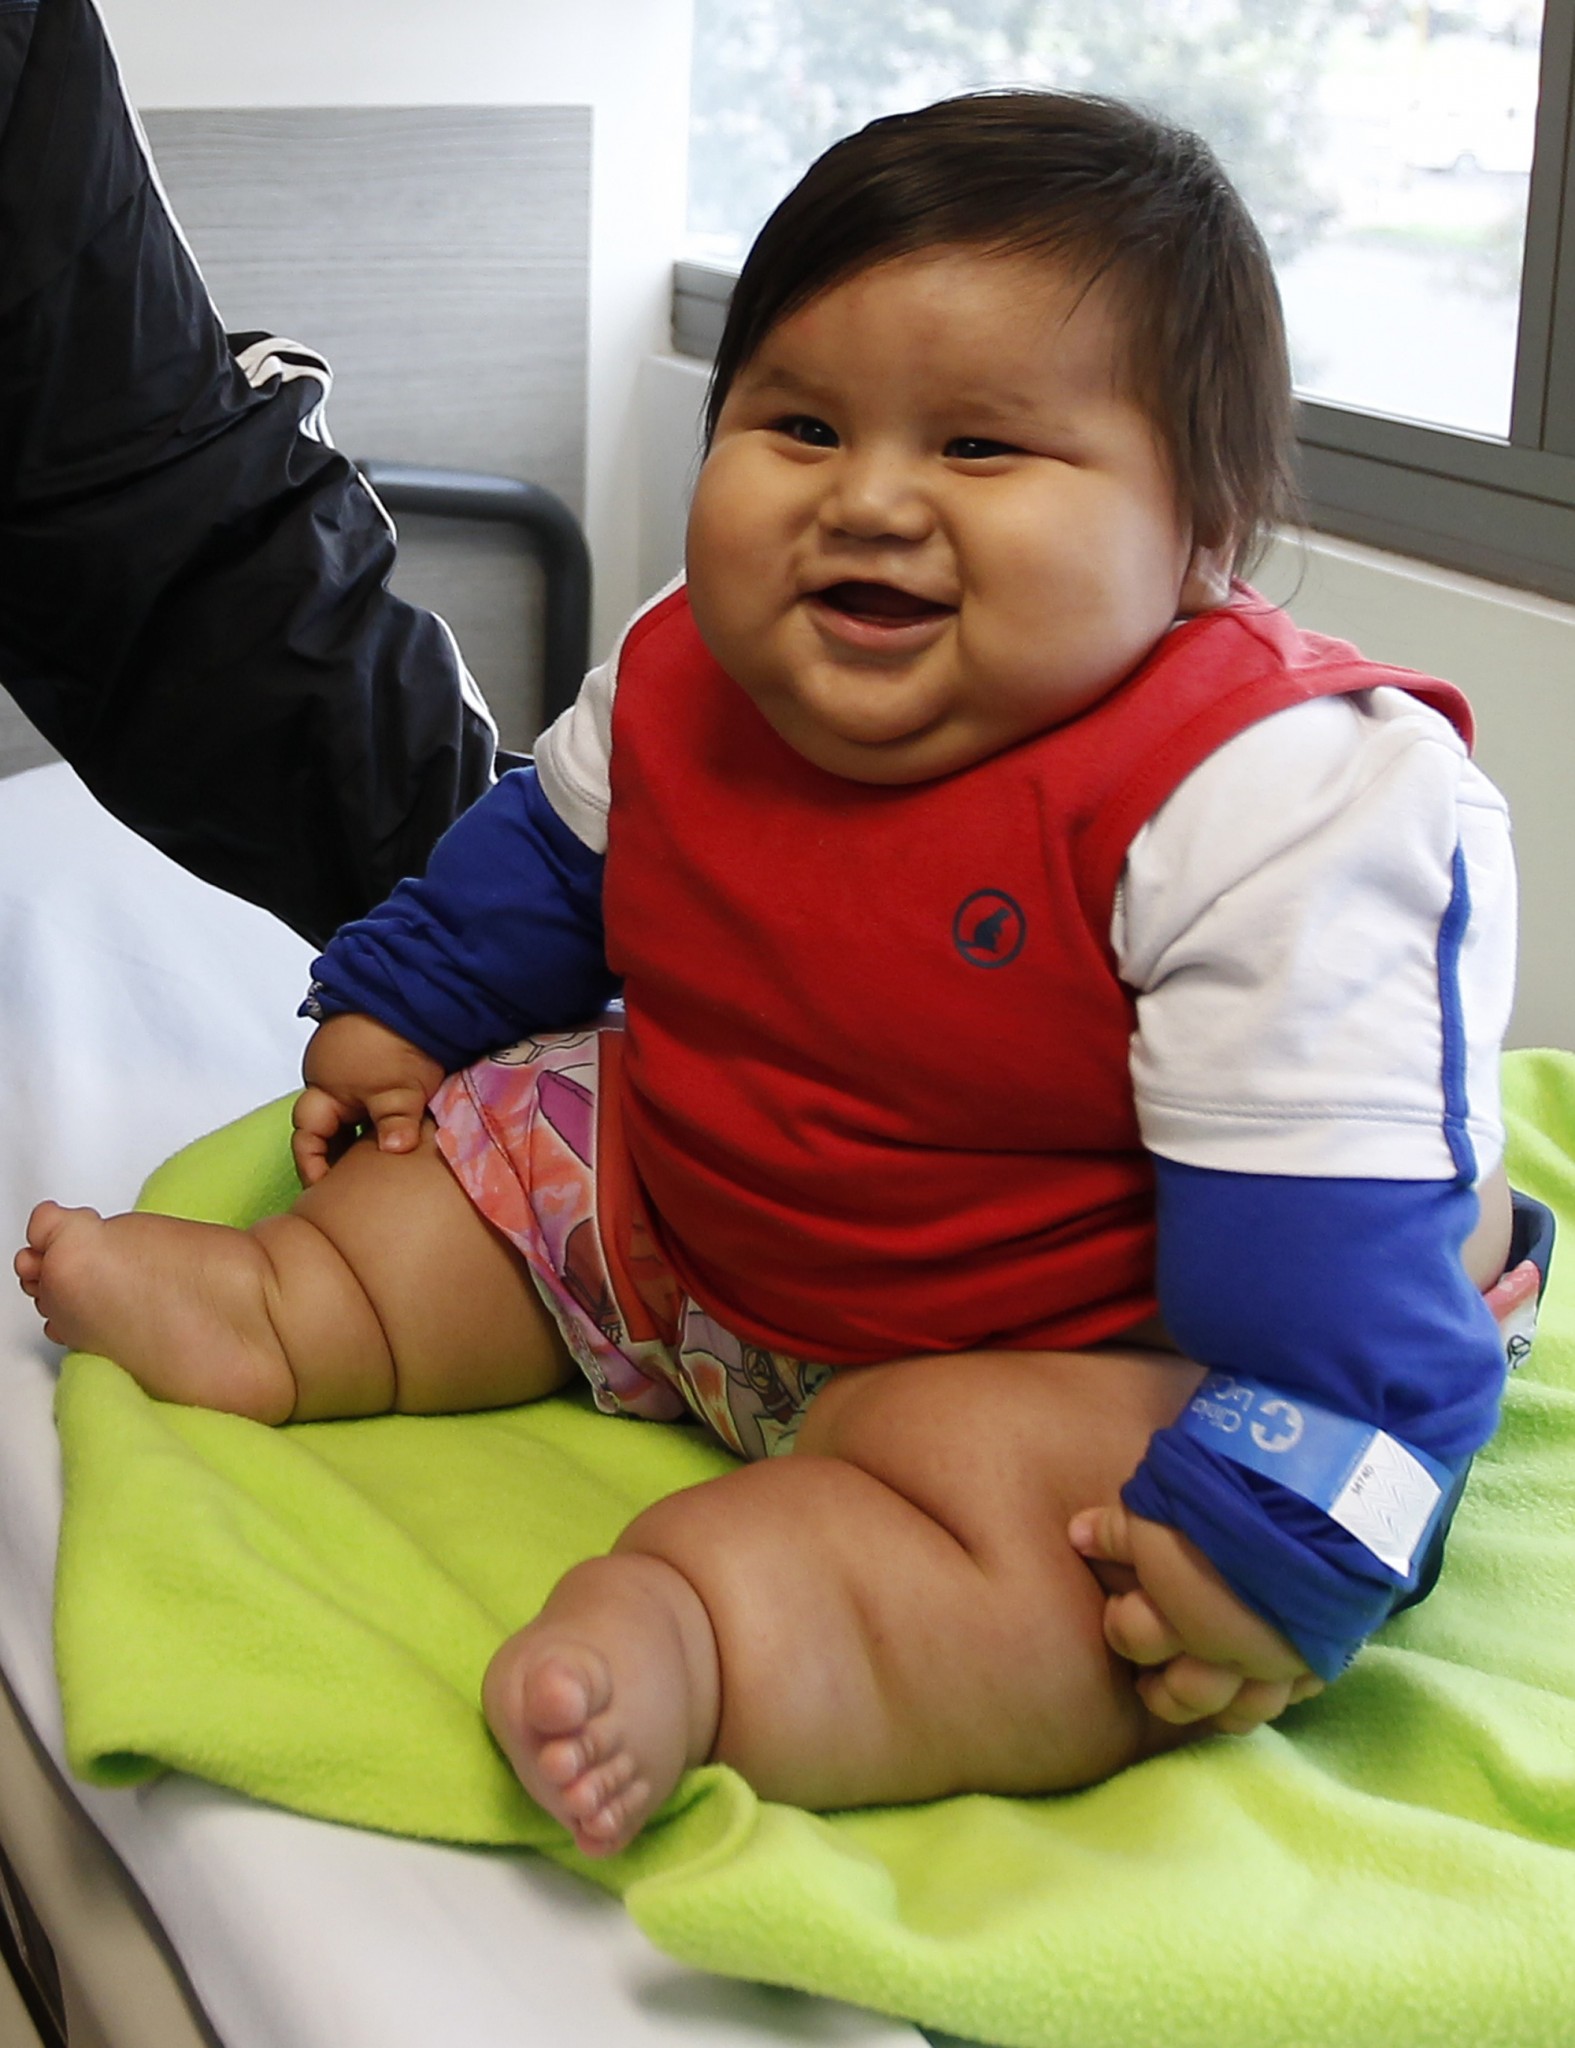 Tretina čilských detí do siedmich rokov má nadváhu a desať percent detí v tejto vekovej kategórii je obéznych.